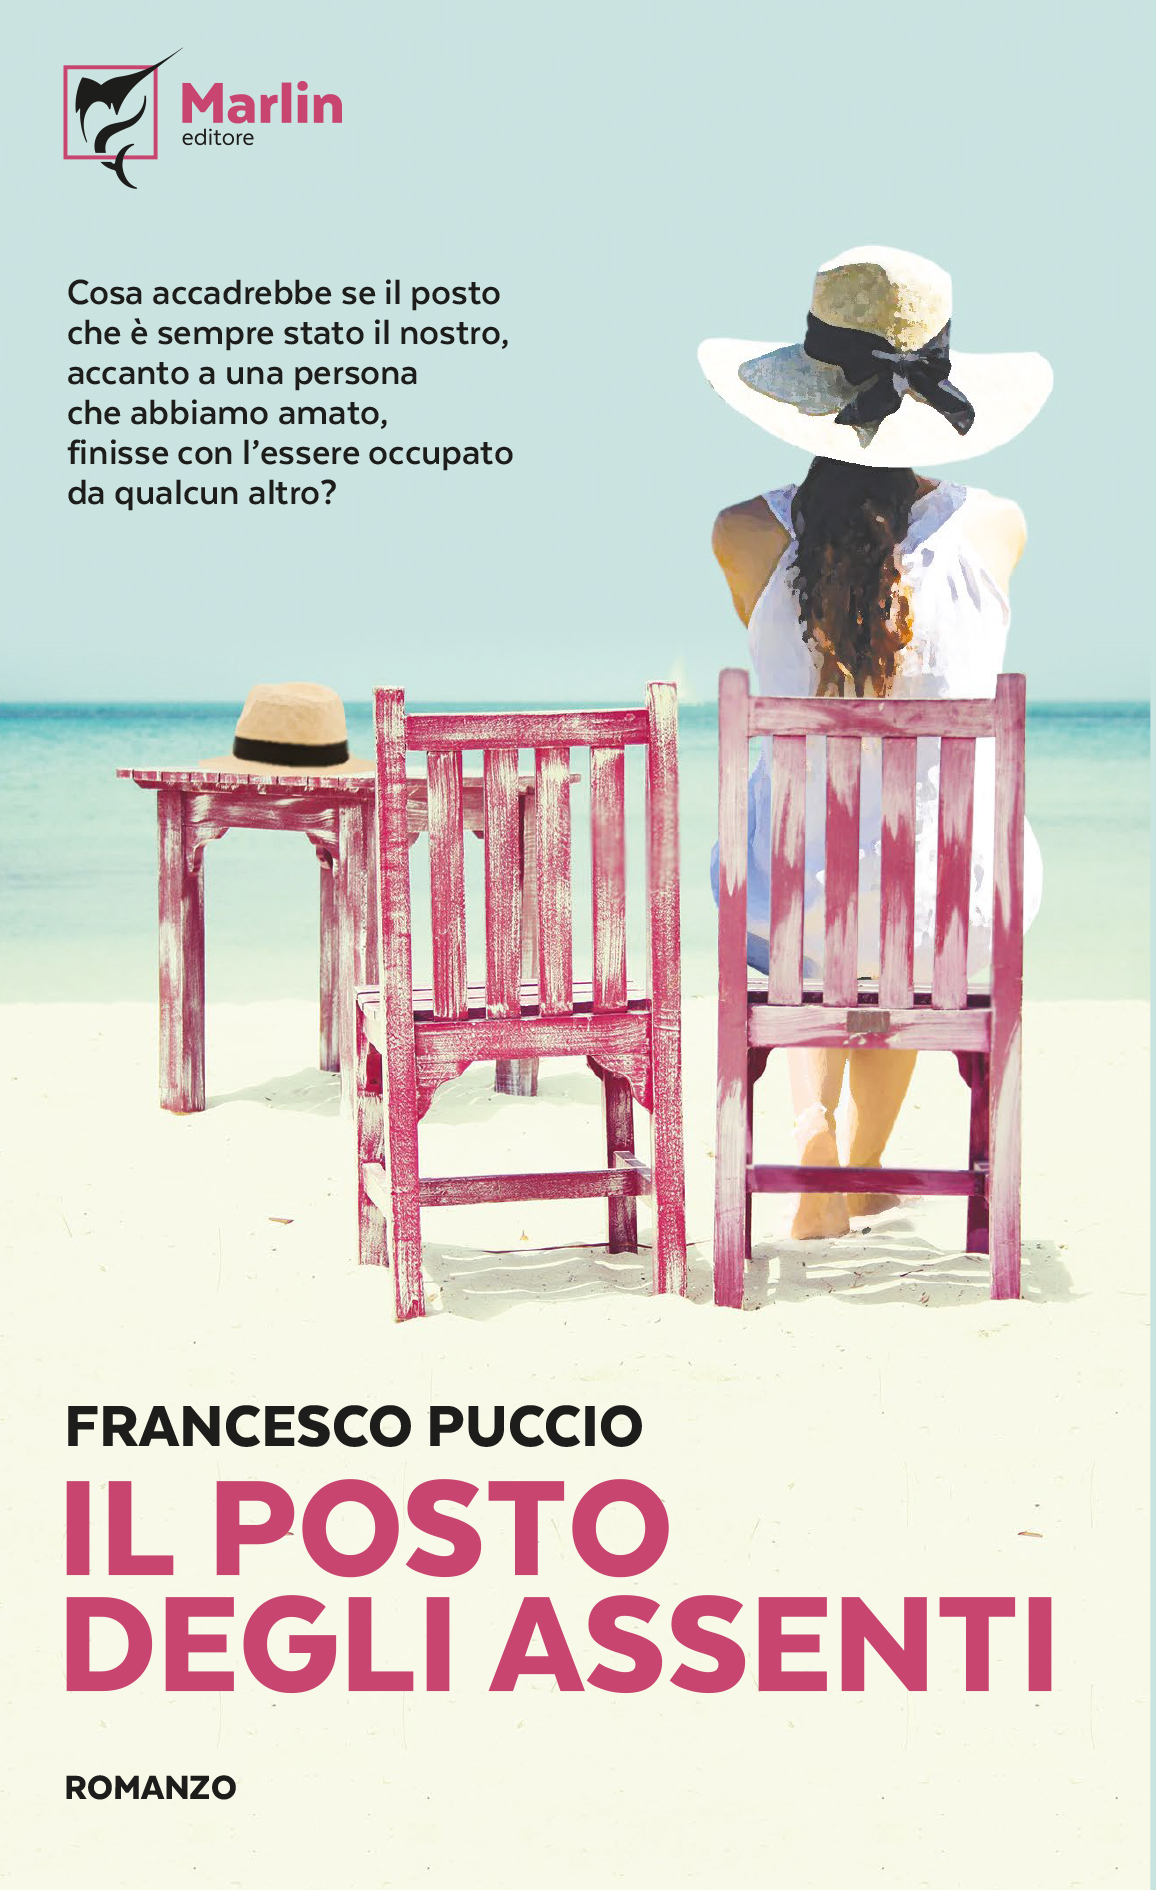 Al Castello di Castellabate verrà presentato il 13 luglio il romanzo di Francesco Puccio “Il posto degli assenti”